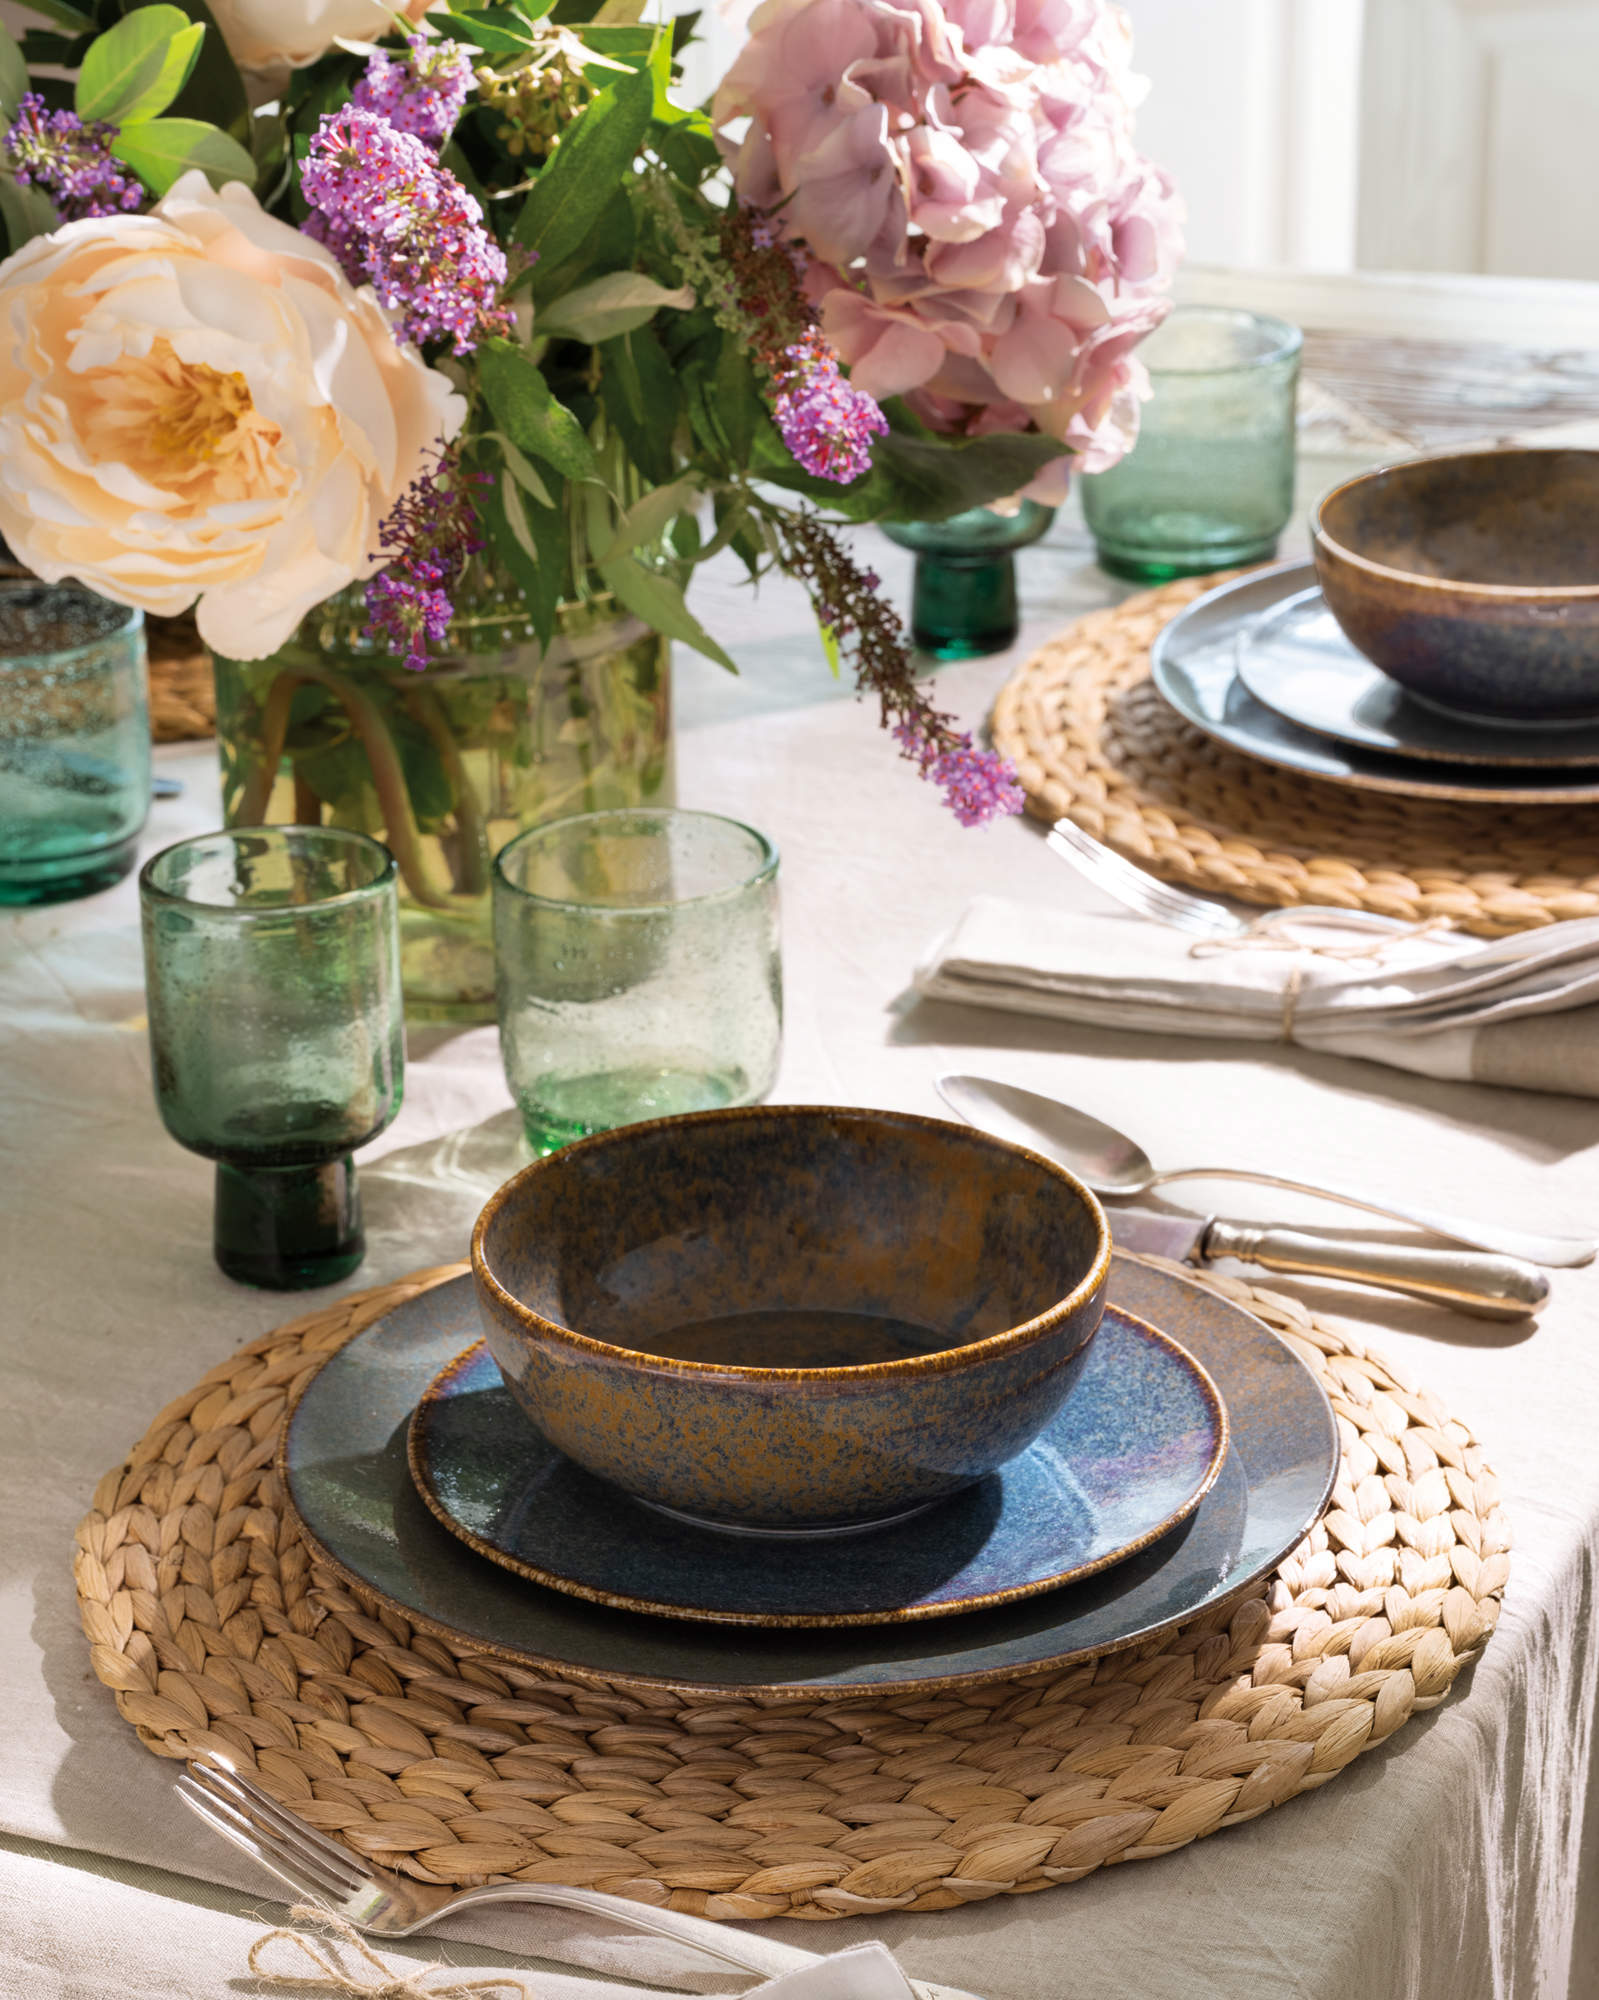 Detalle de la mesa con individuales de mimbre, arreglos florales y vajilla de estilo rústico.